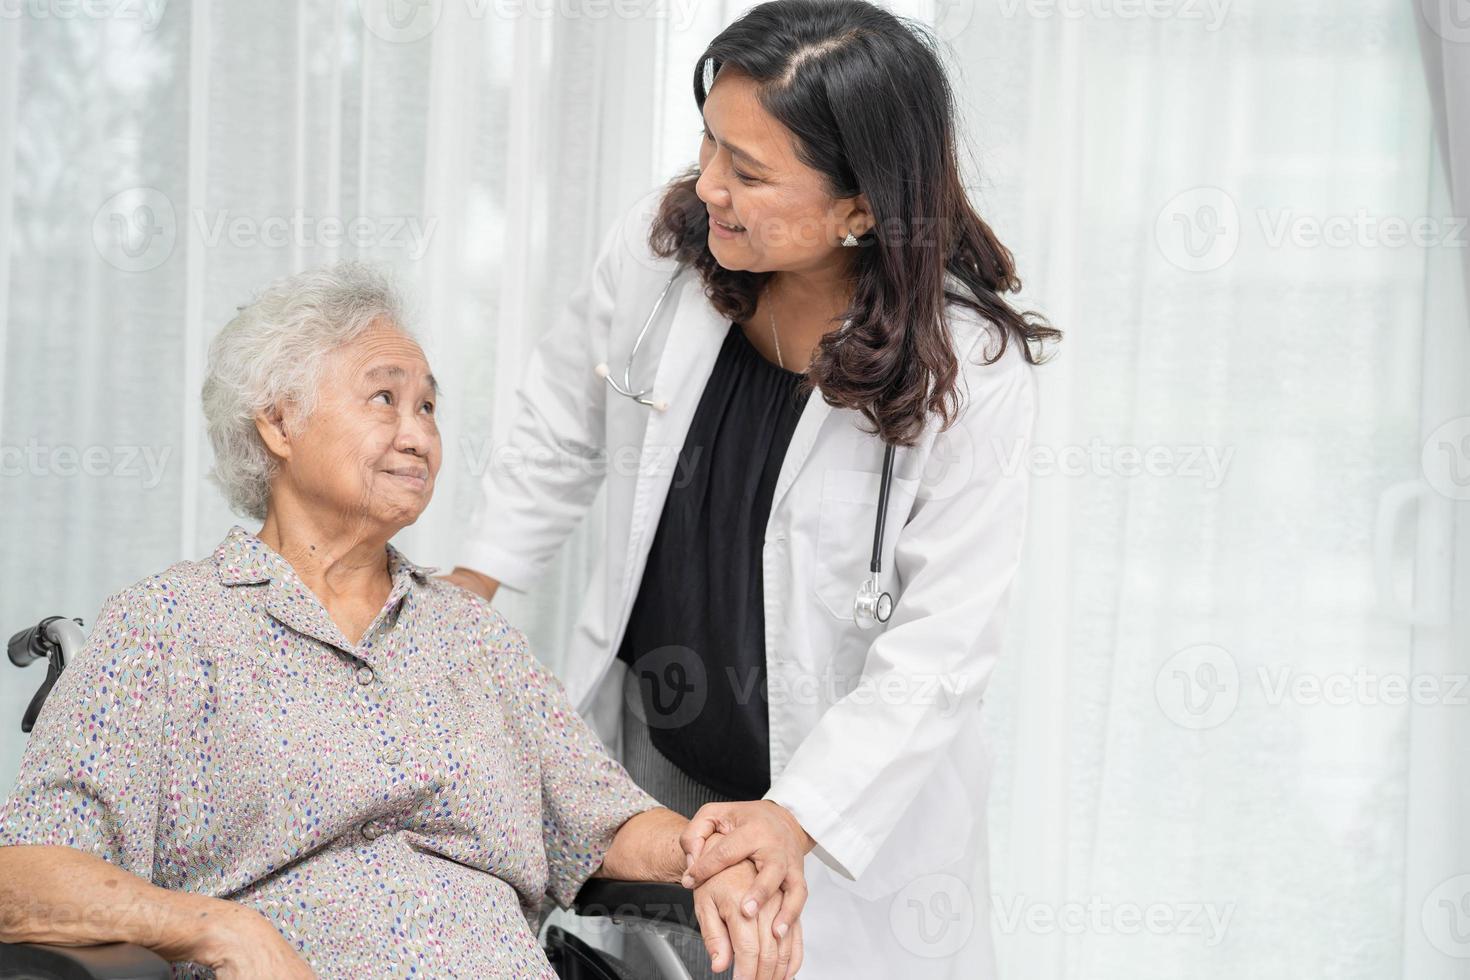 dokter hulp en zorg Aziatische senior of oudere oude dame vrouw patiënt zittend op rolstoel op verpleegafdeling ziekenhuis, gezond sterk medisch concept foto